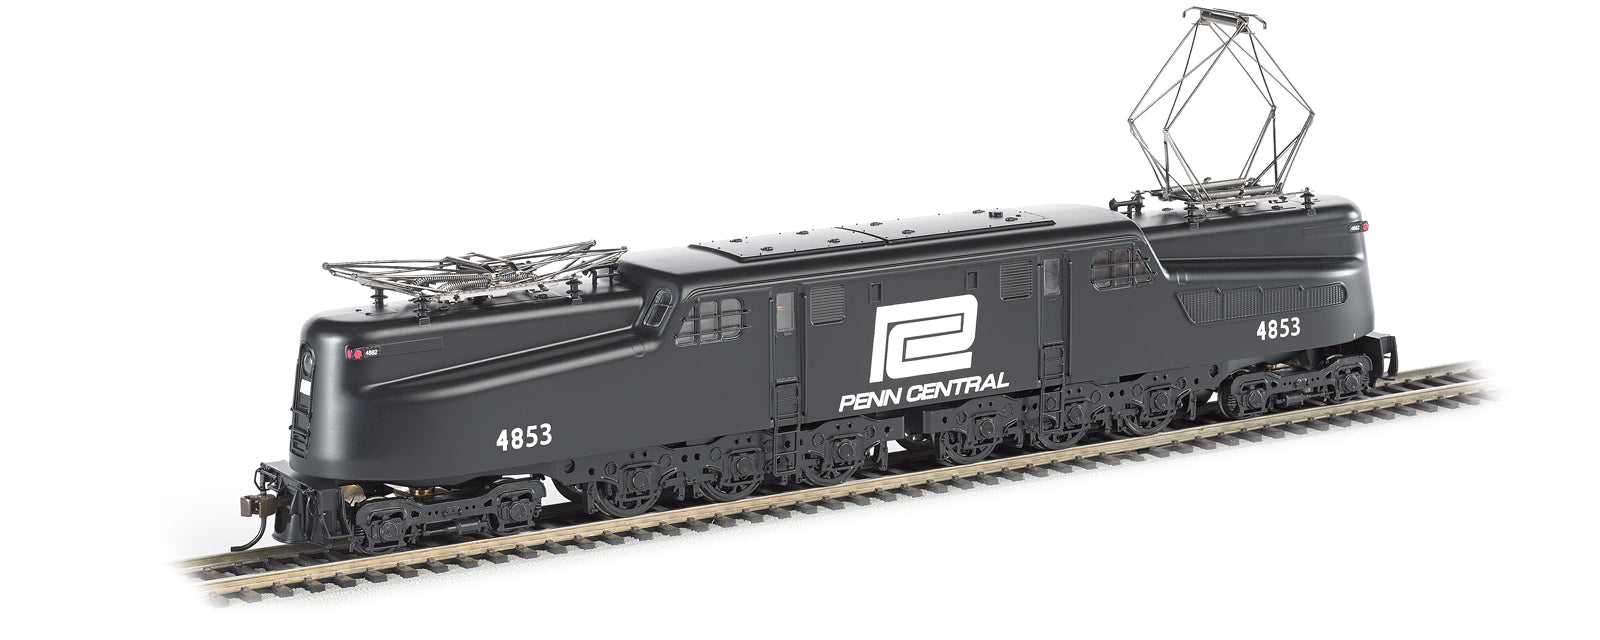 Bachman GG-1 Locomotive - Penn Central #4855 (Black & White), N Scale